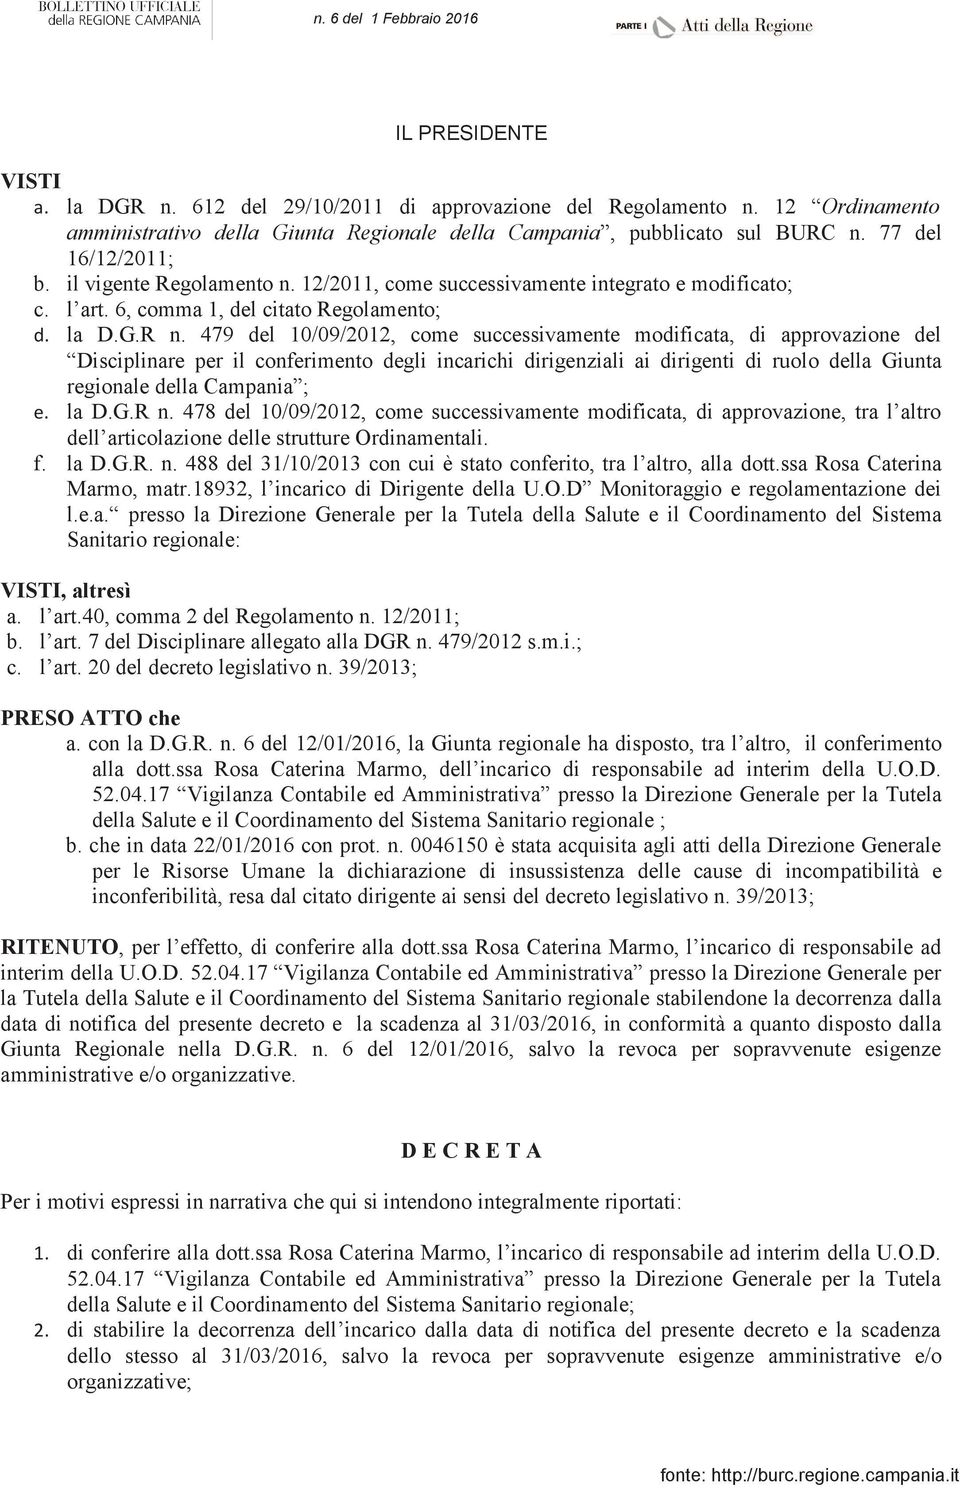 479 del 10/09/2012, come successivamente modificata, di approvazione del Disciplinare per il conferimento degli incarichi dirigenziali ai dirigenti di ruolo della Giunta regionale della Campania ; la